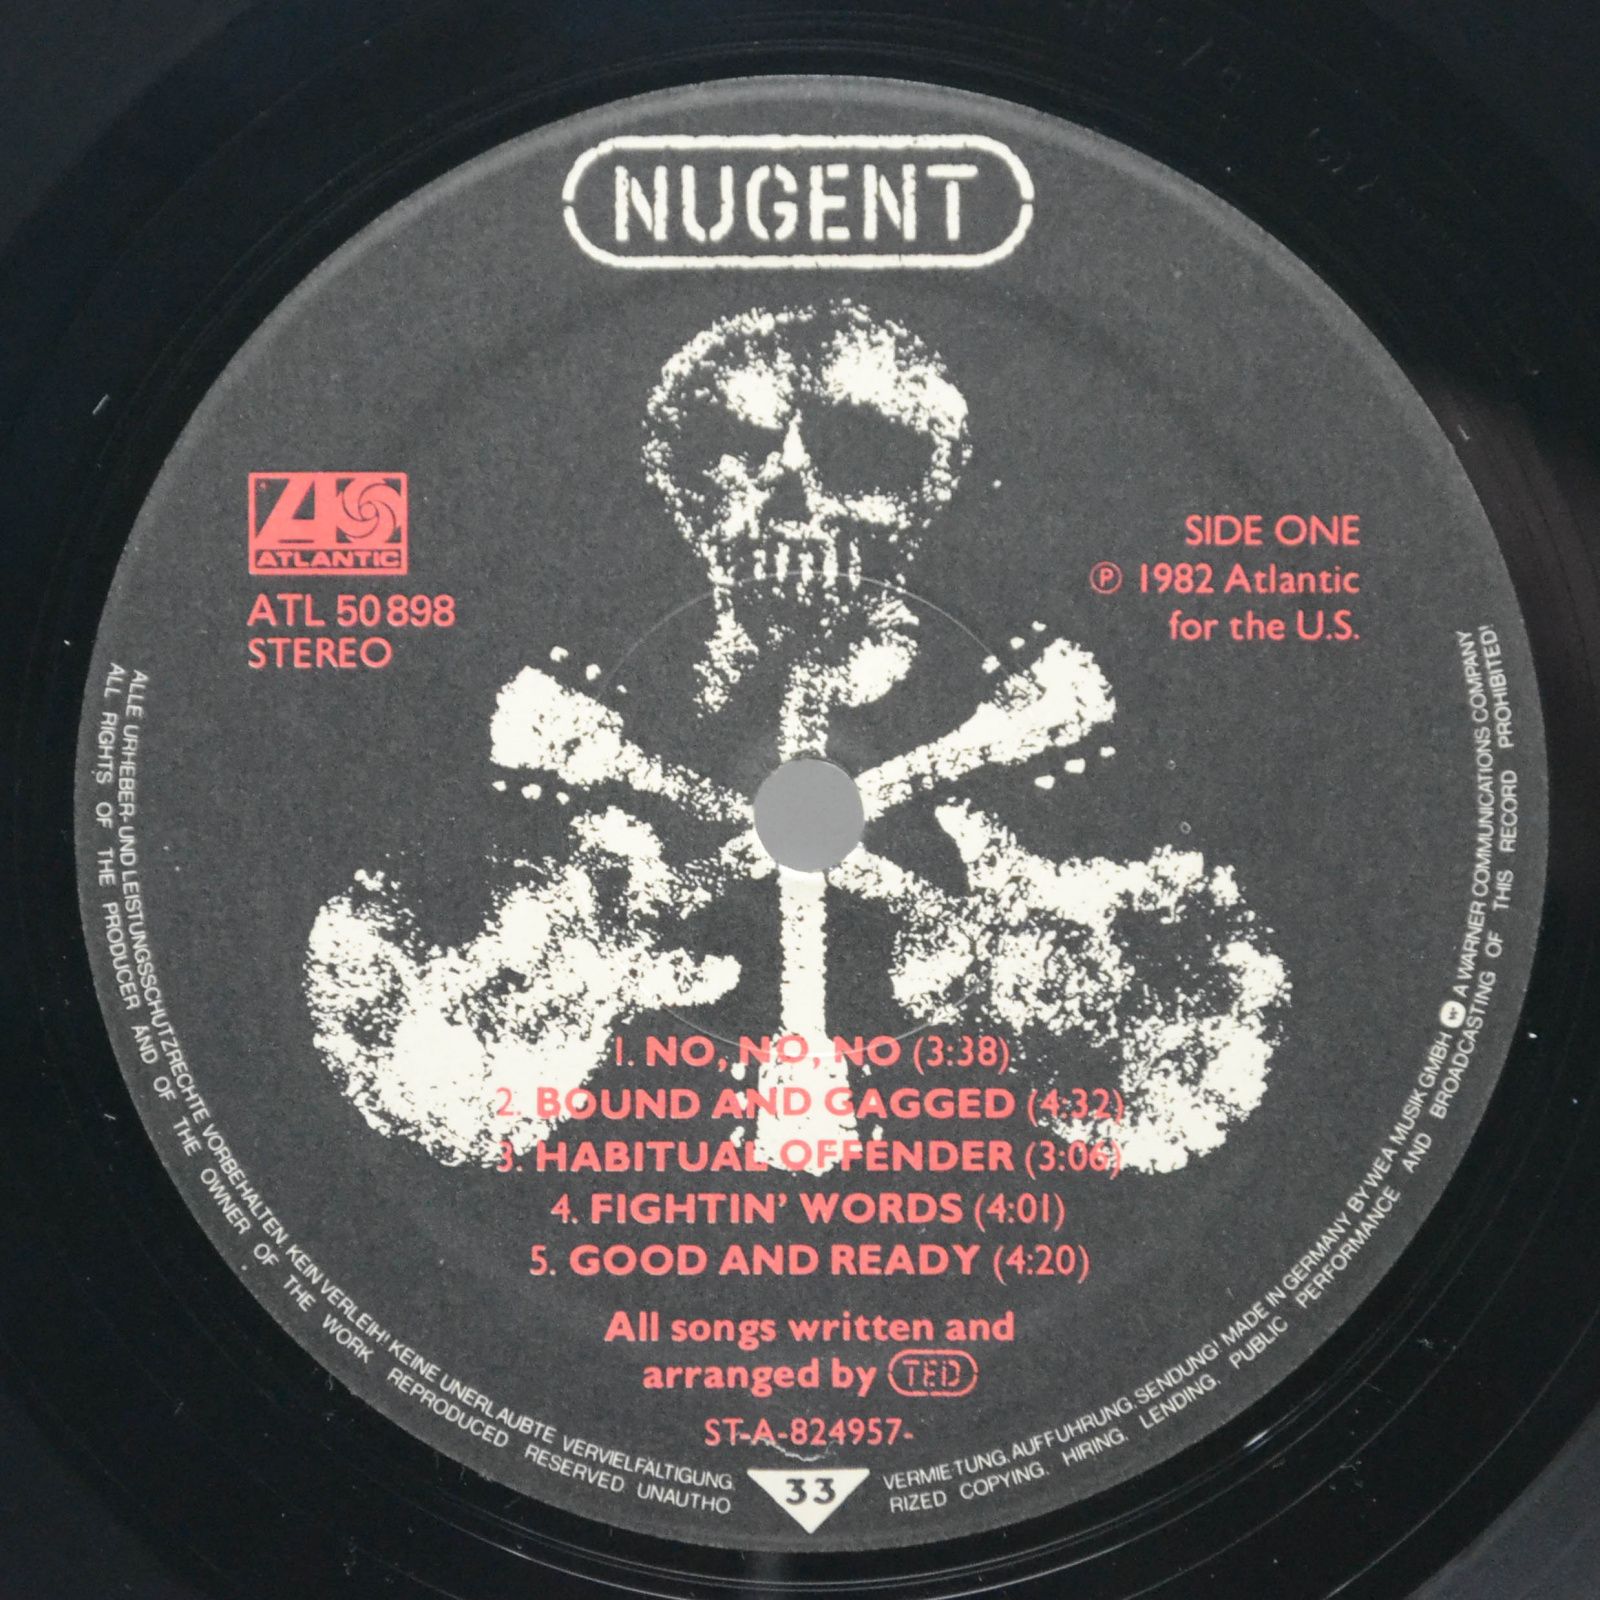 Ted Nugent — Nugent, 1982